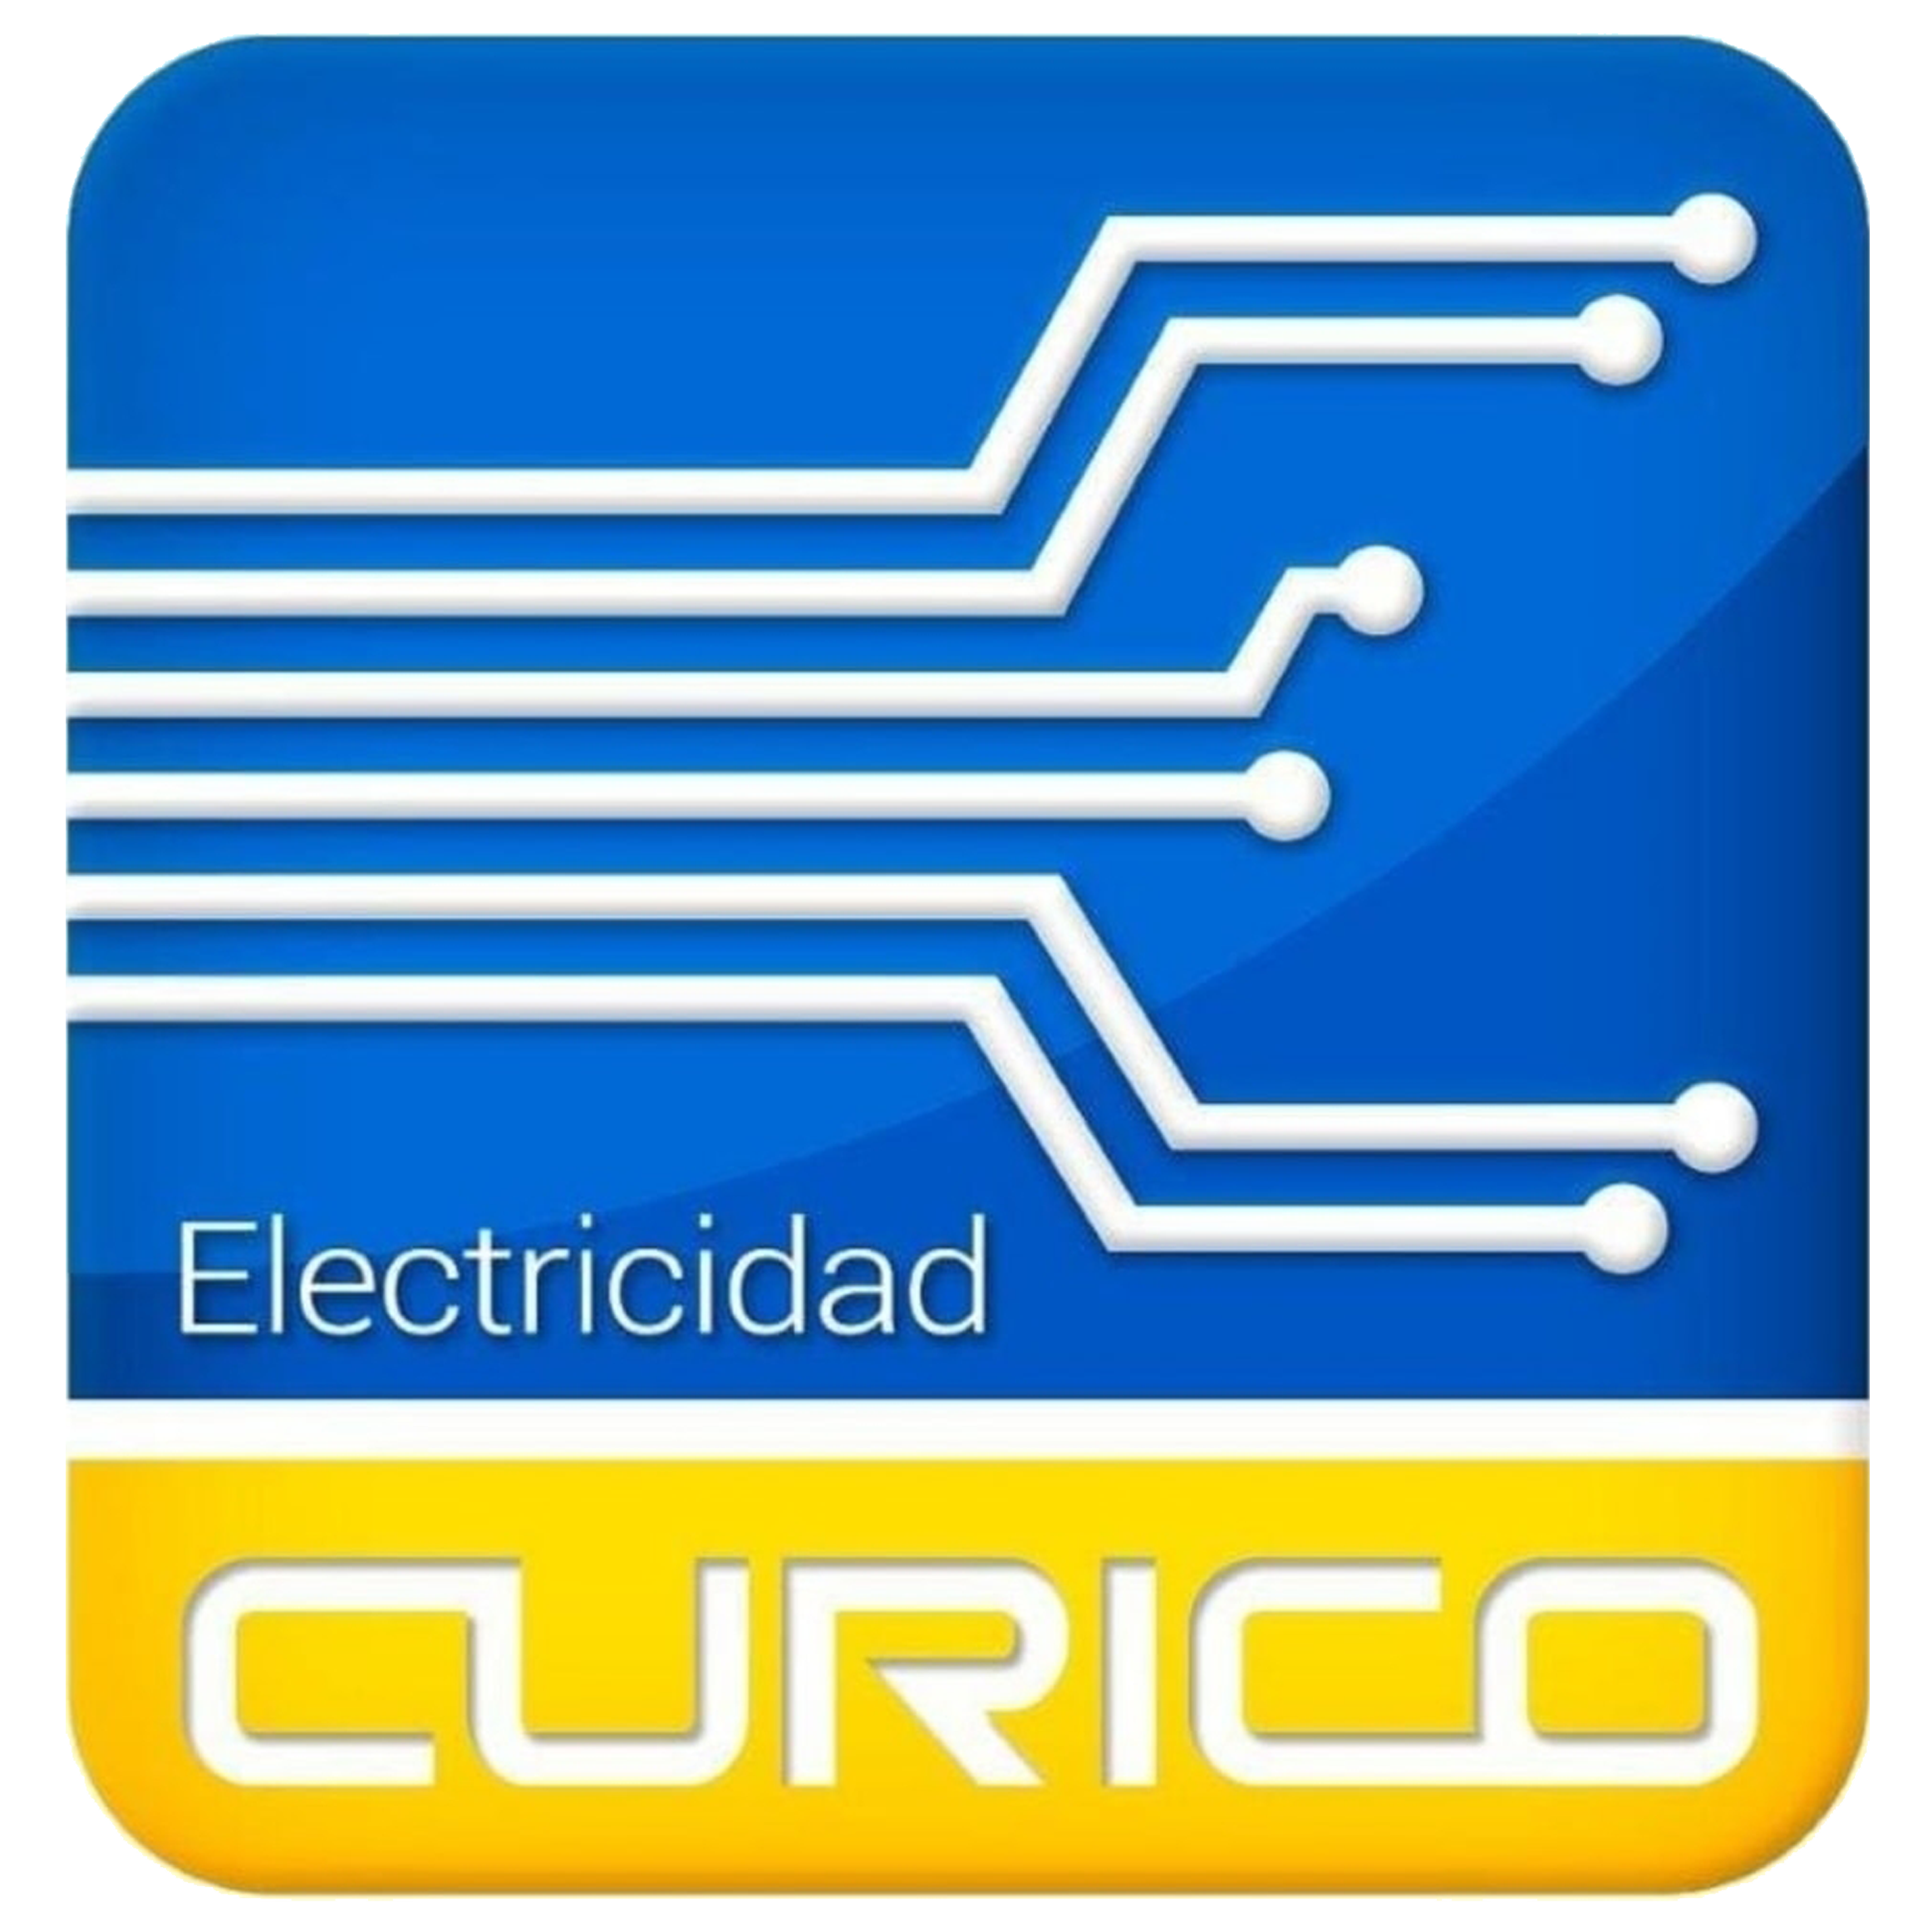 ELECTRICIDAD CURICO